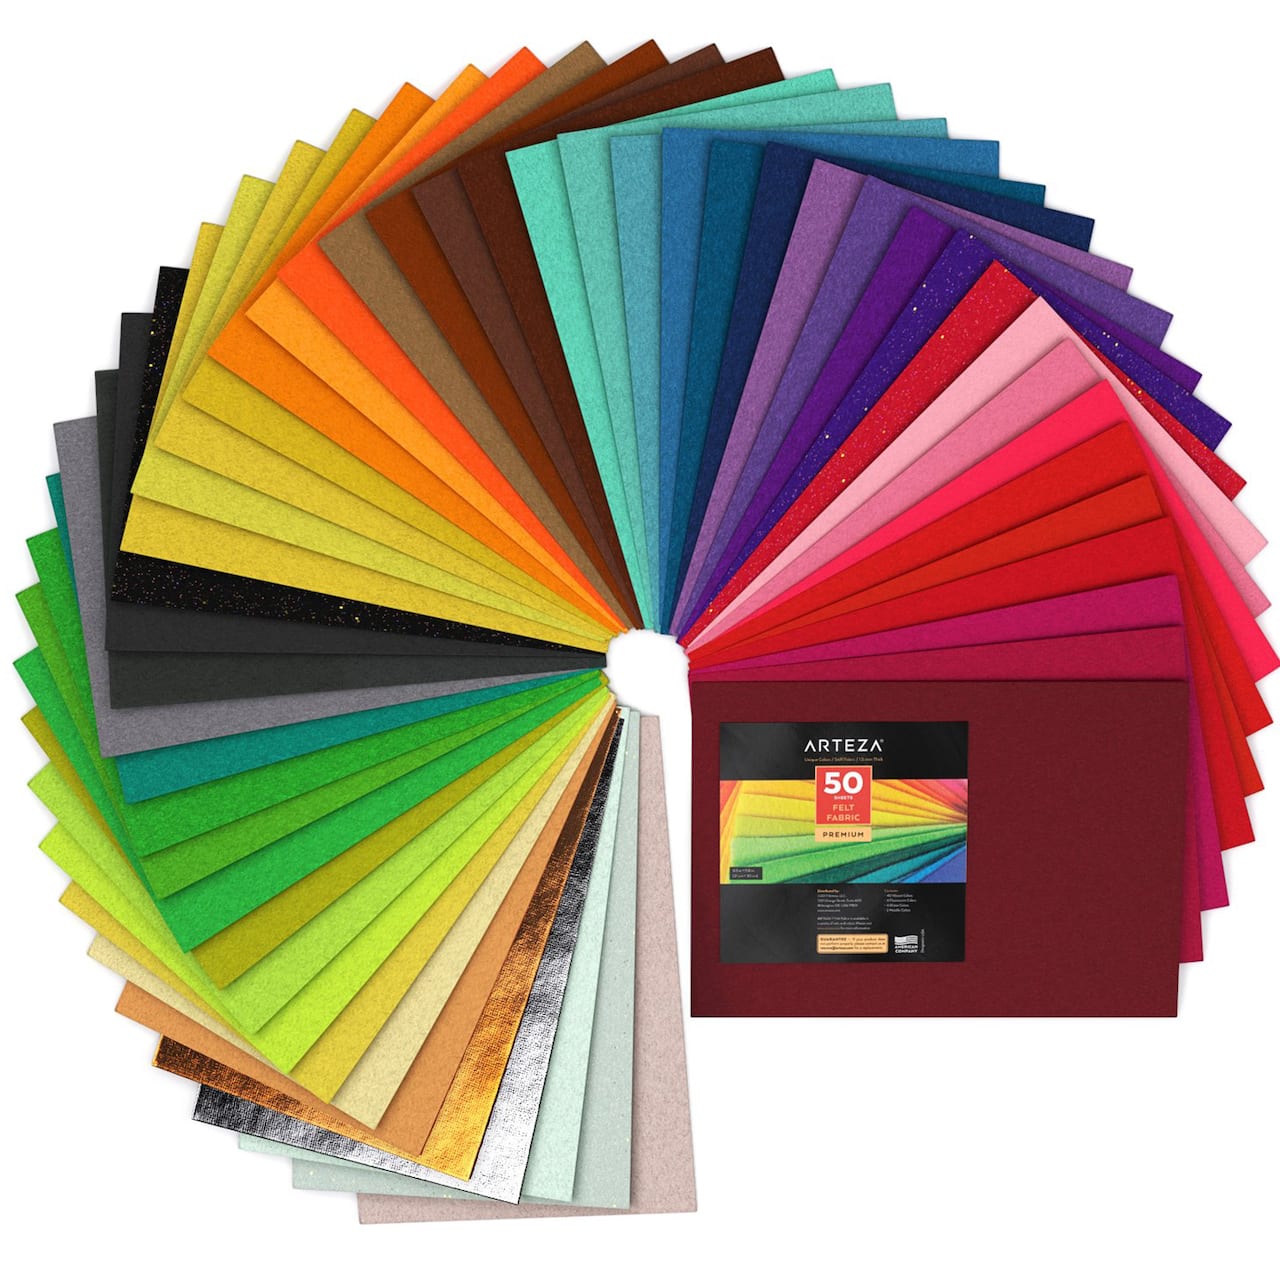 Arteza® 8.3 x 11.8 Felt Fabric in Assorted Colors, 50 Sheets